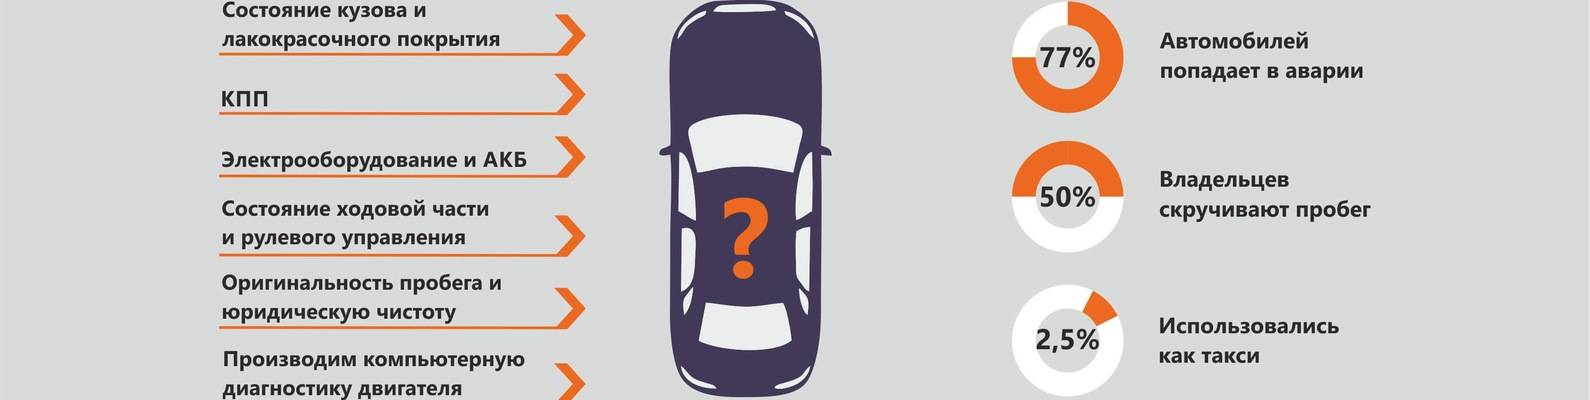 Как выбрать автомобиль под себя: параметры выбора авто